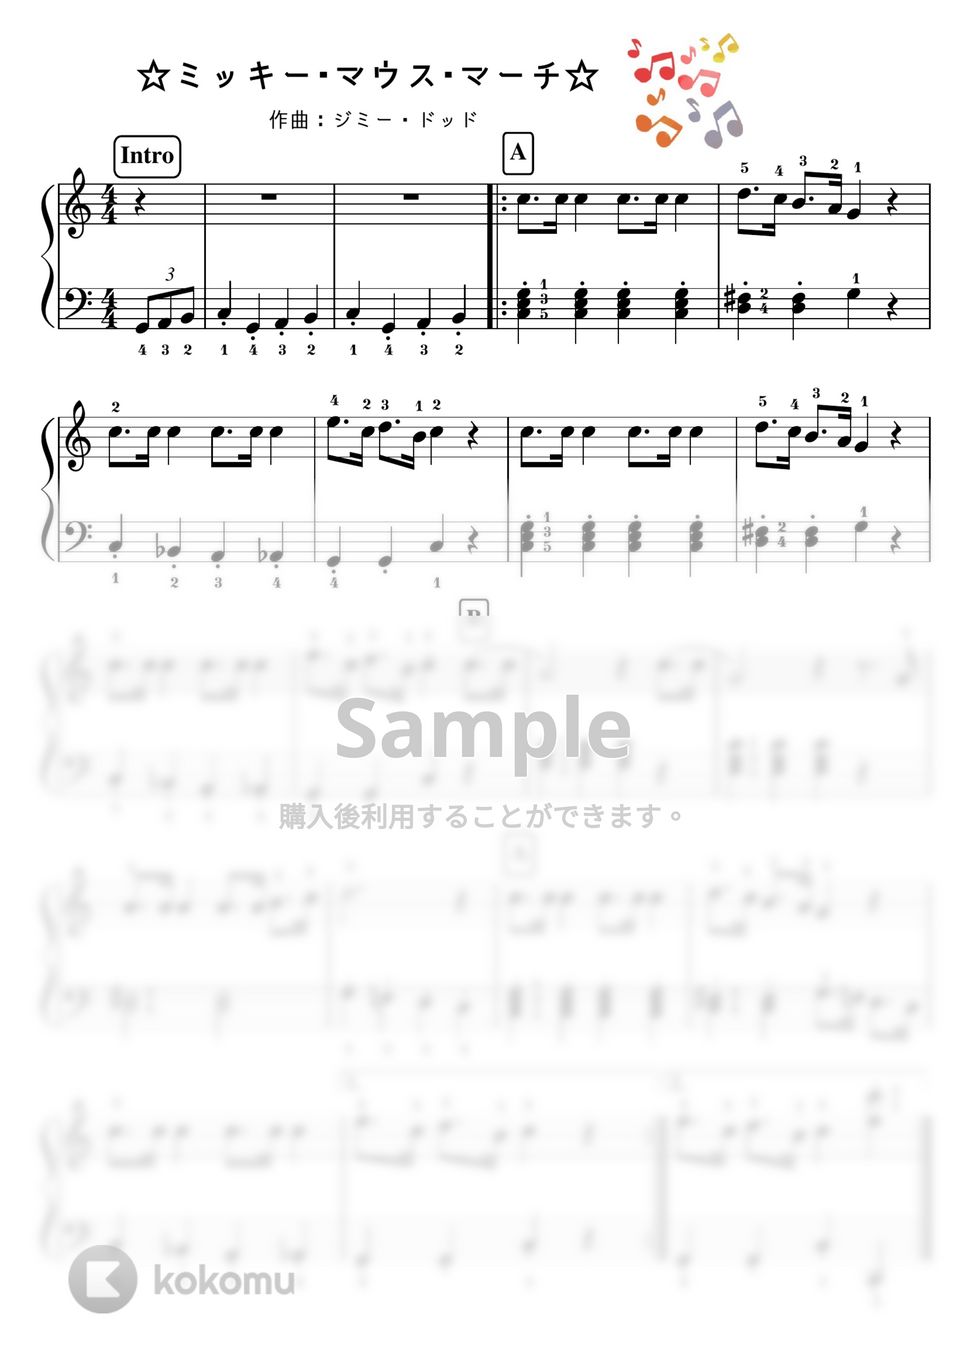 ミッキーマウス（ディズニー） - 【初級】ミッキーマウスマーチ/かんたん２種類 (ディズニー,ミッキー) by ピアノのせんせいの楽譜集